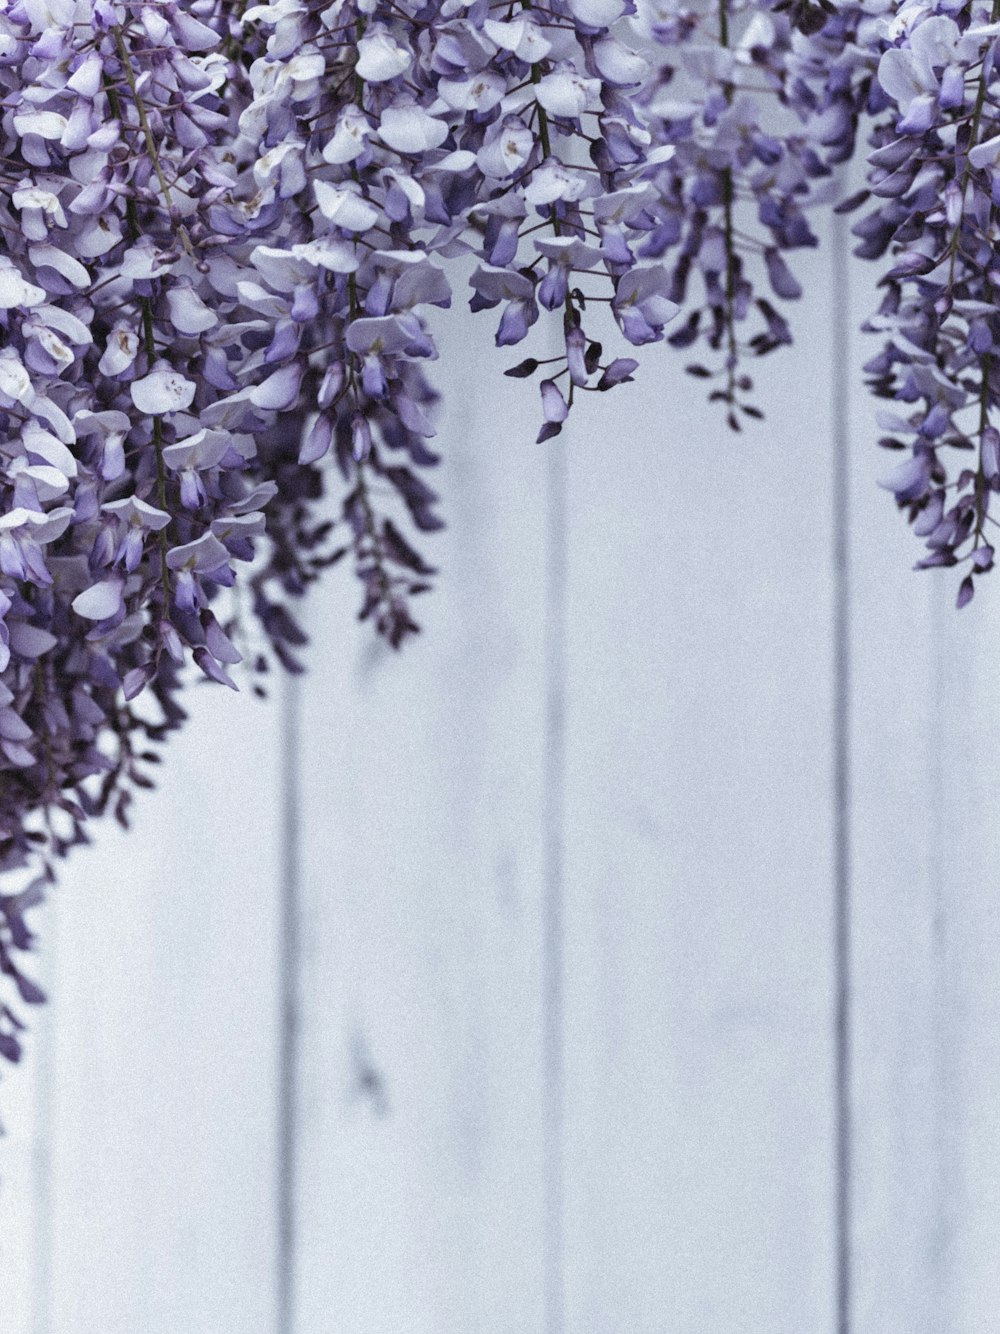 flores púrpuras y blancas en una valla de madera gris